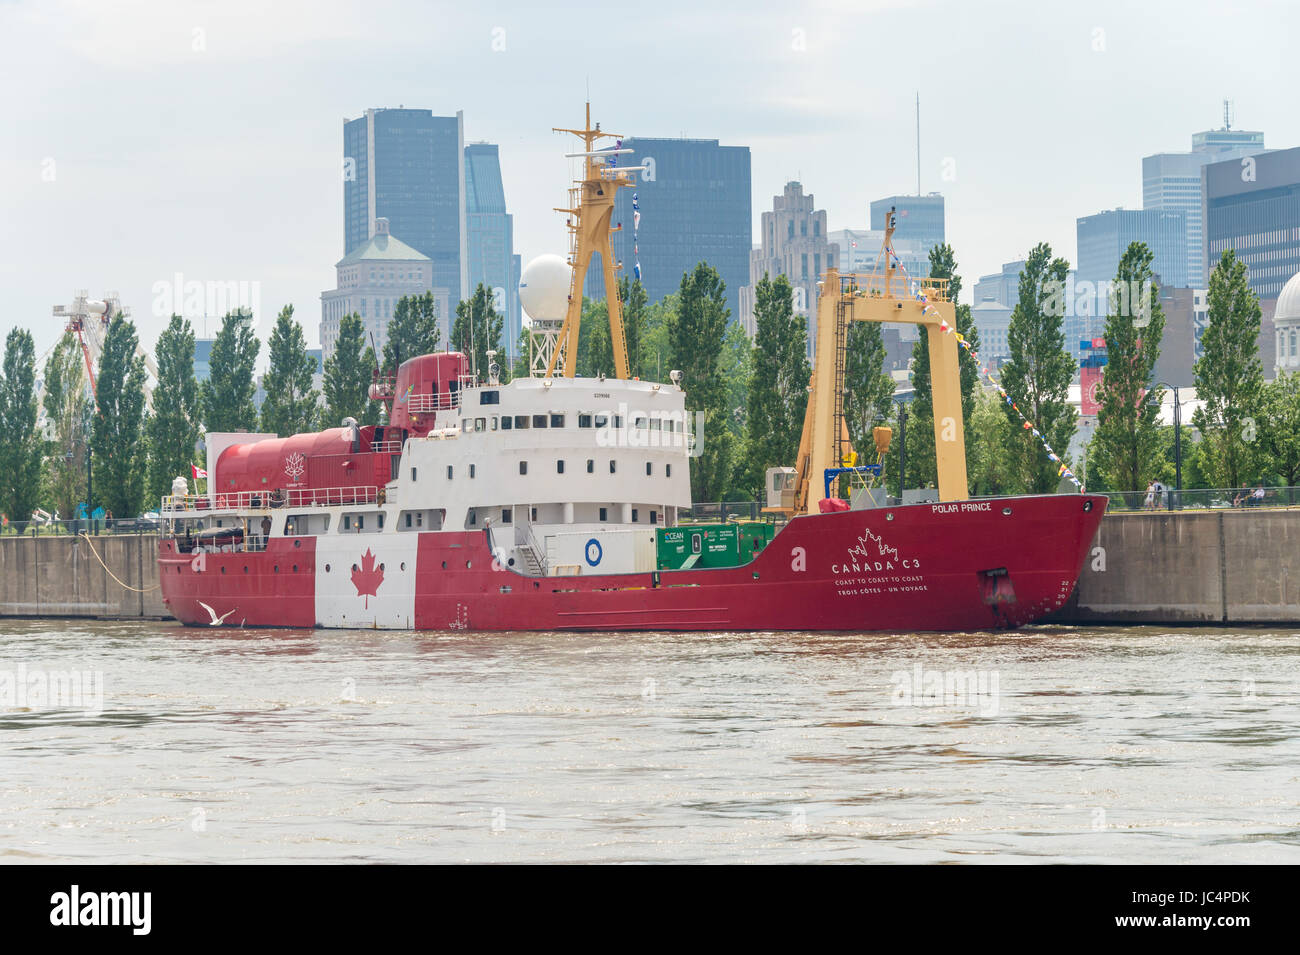 Montreal, Canadá - 12 de junio de 2017: rompehielos C3 navegando por el Pasaje del Noroeste de Toronto a Victoria está amarrado en el Viejo Puerto de Montreal Foto de stock